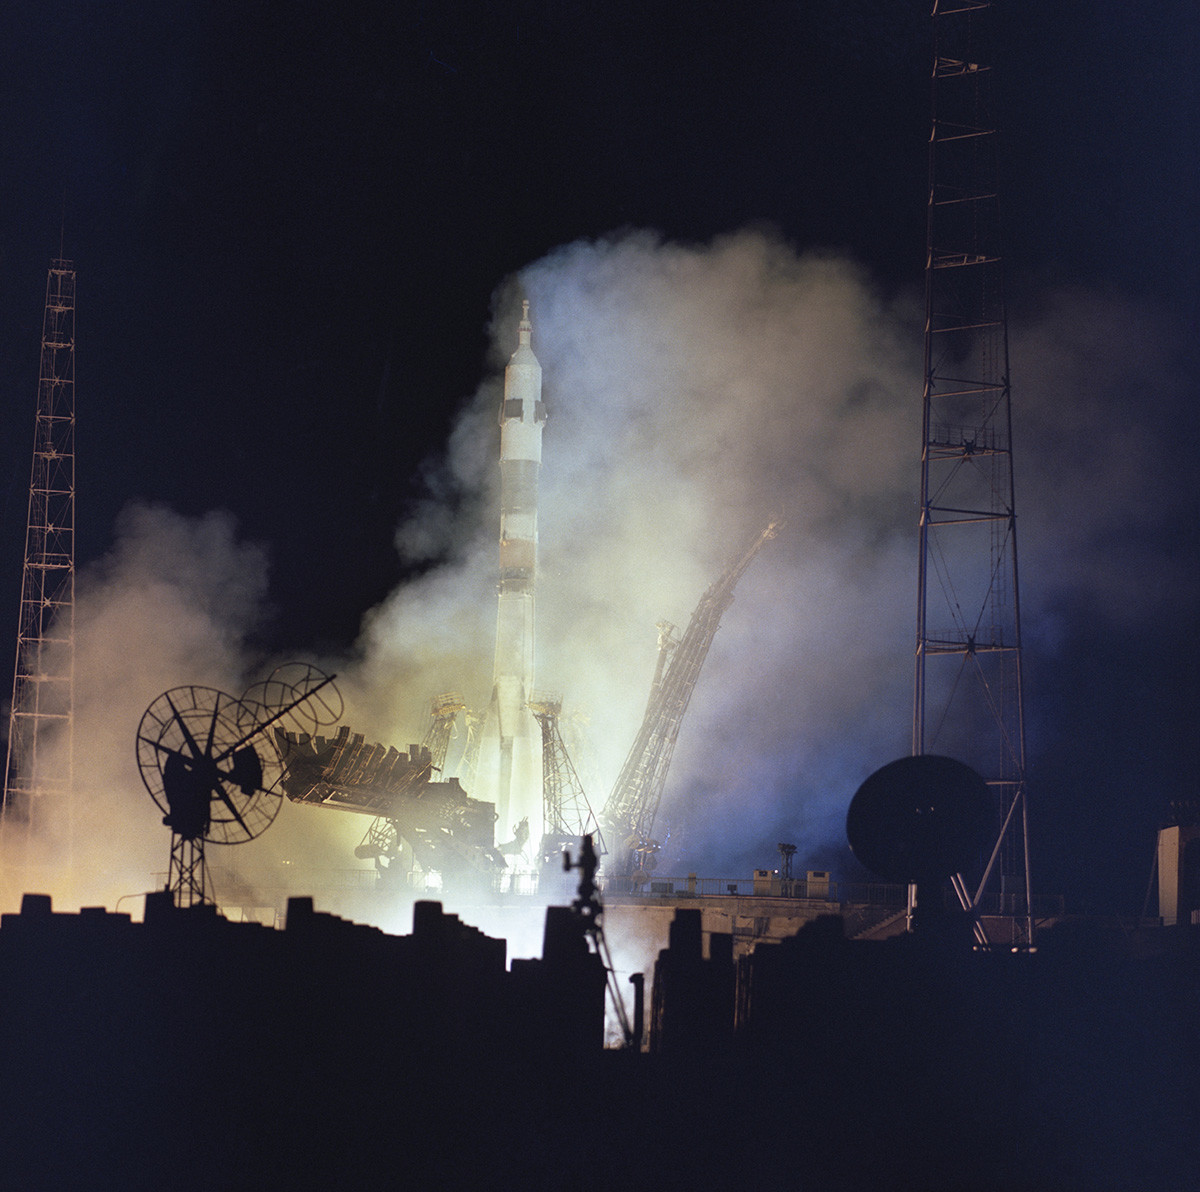 Peluncuran roket pembawa wahana antariksa Soyuz-23 di Kosmodrom Baikonur, 14 Oktober 1976.